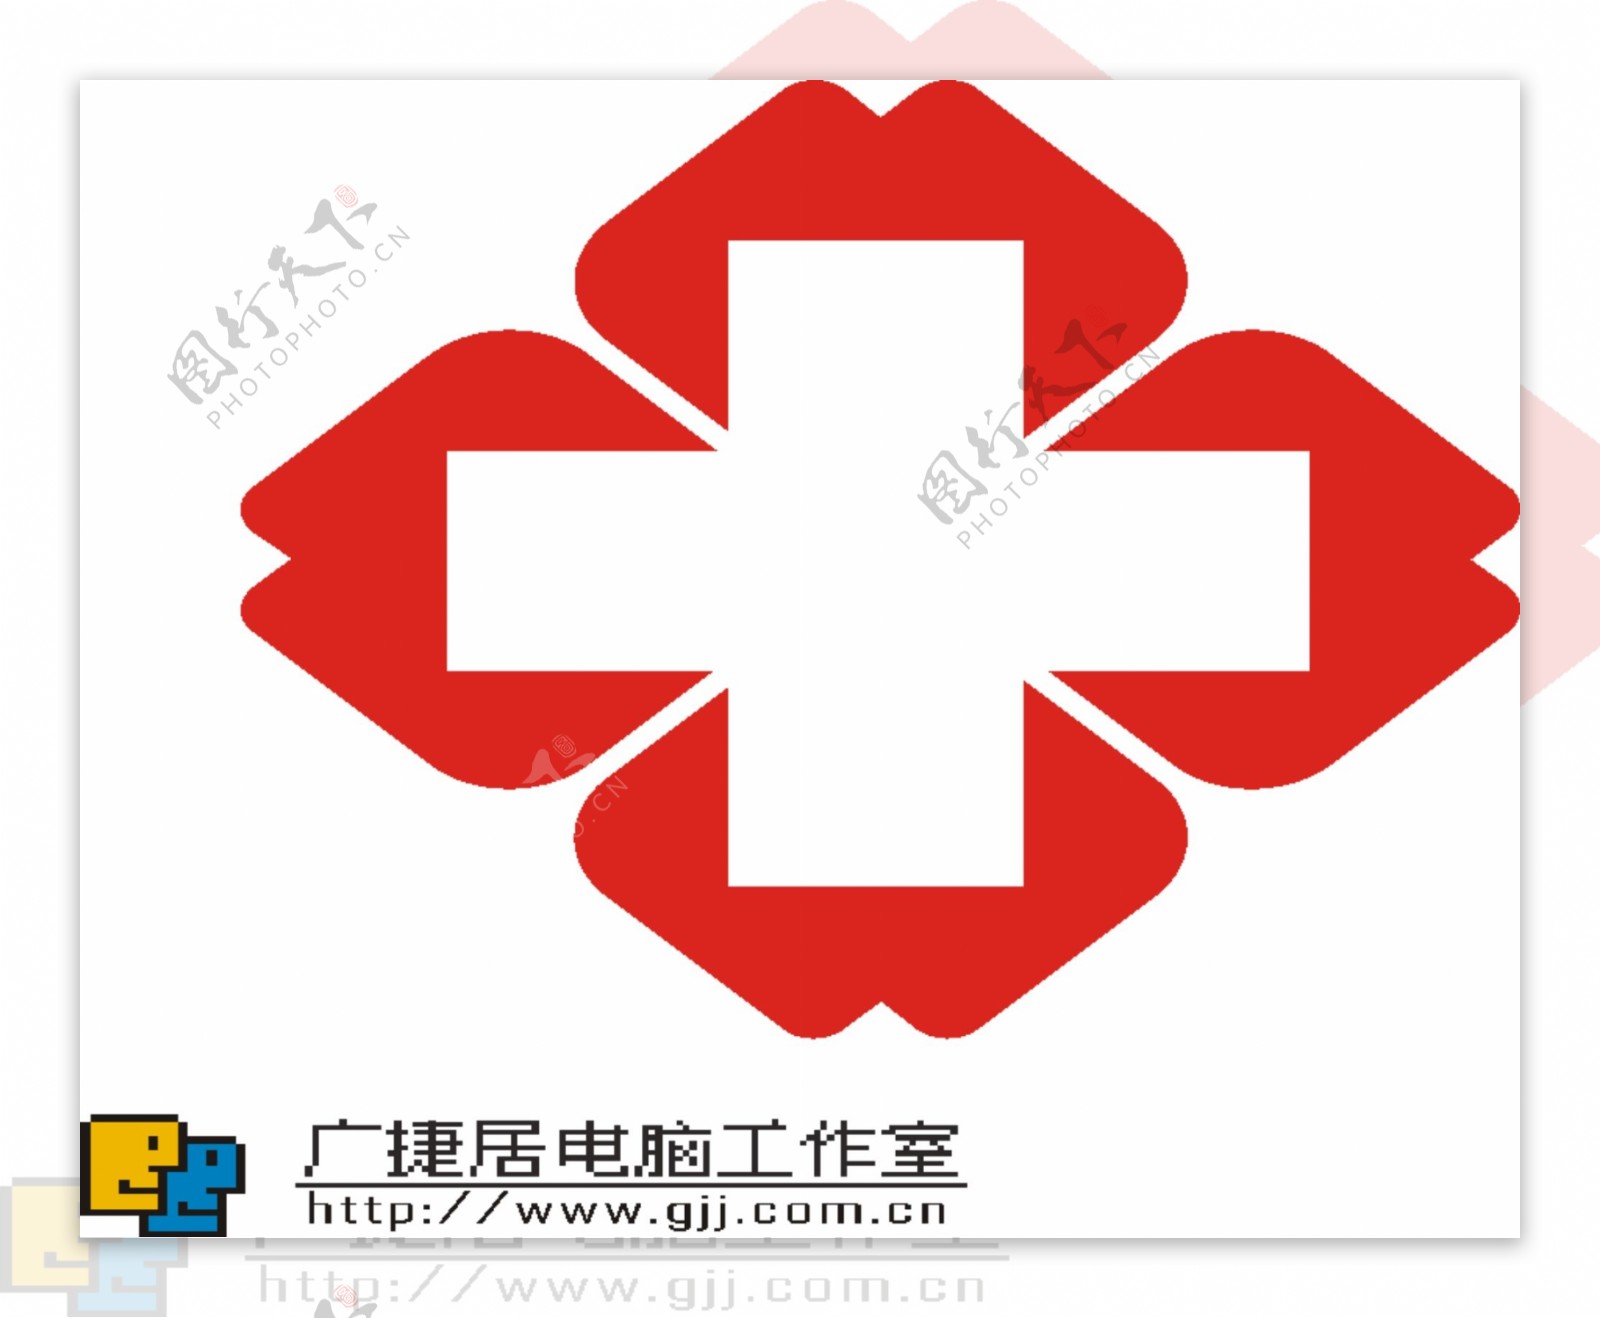 中国红十字会医院卫生部门标志图片